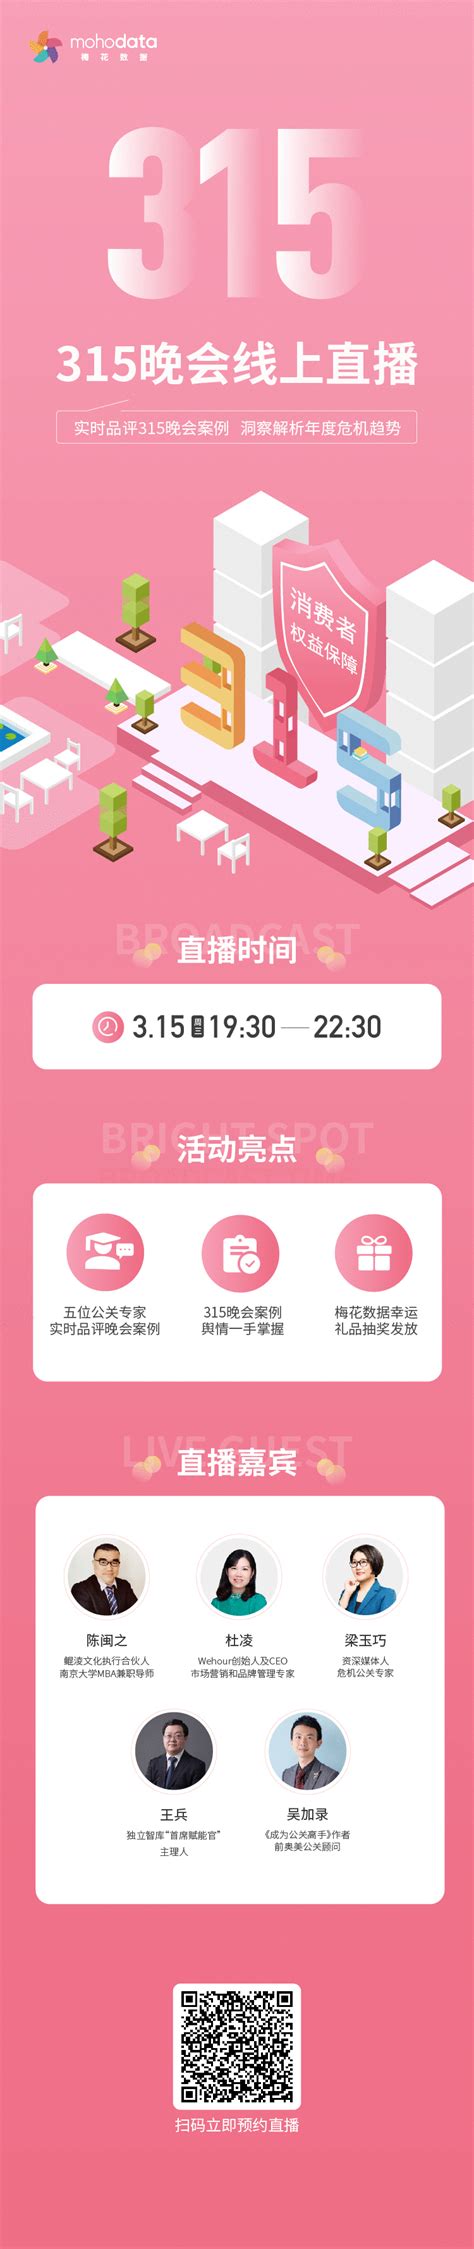 2016年中央电视台春节联欢晚会_LED智能显示-利亚德集团官网